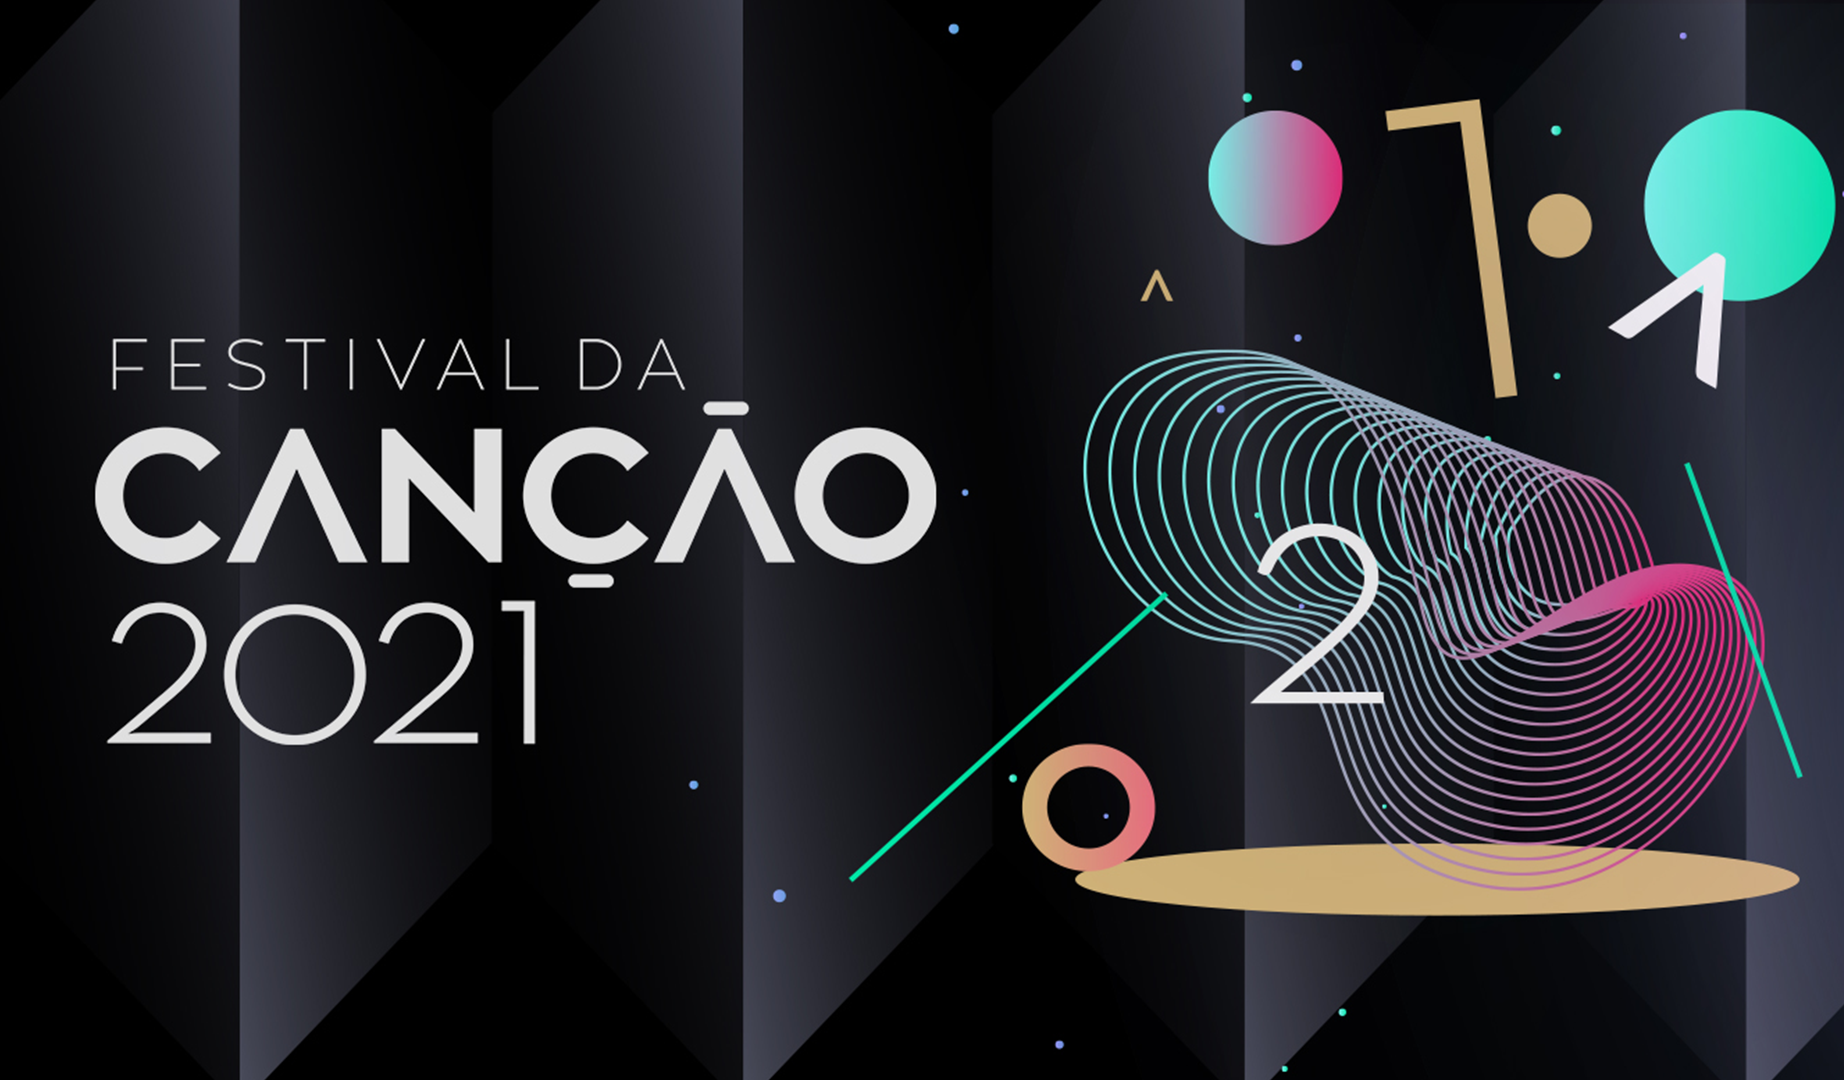 Portugal: Festival da Canção 2021 songs and performers announced